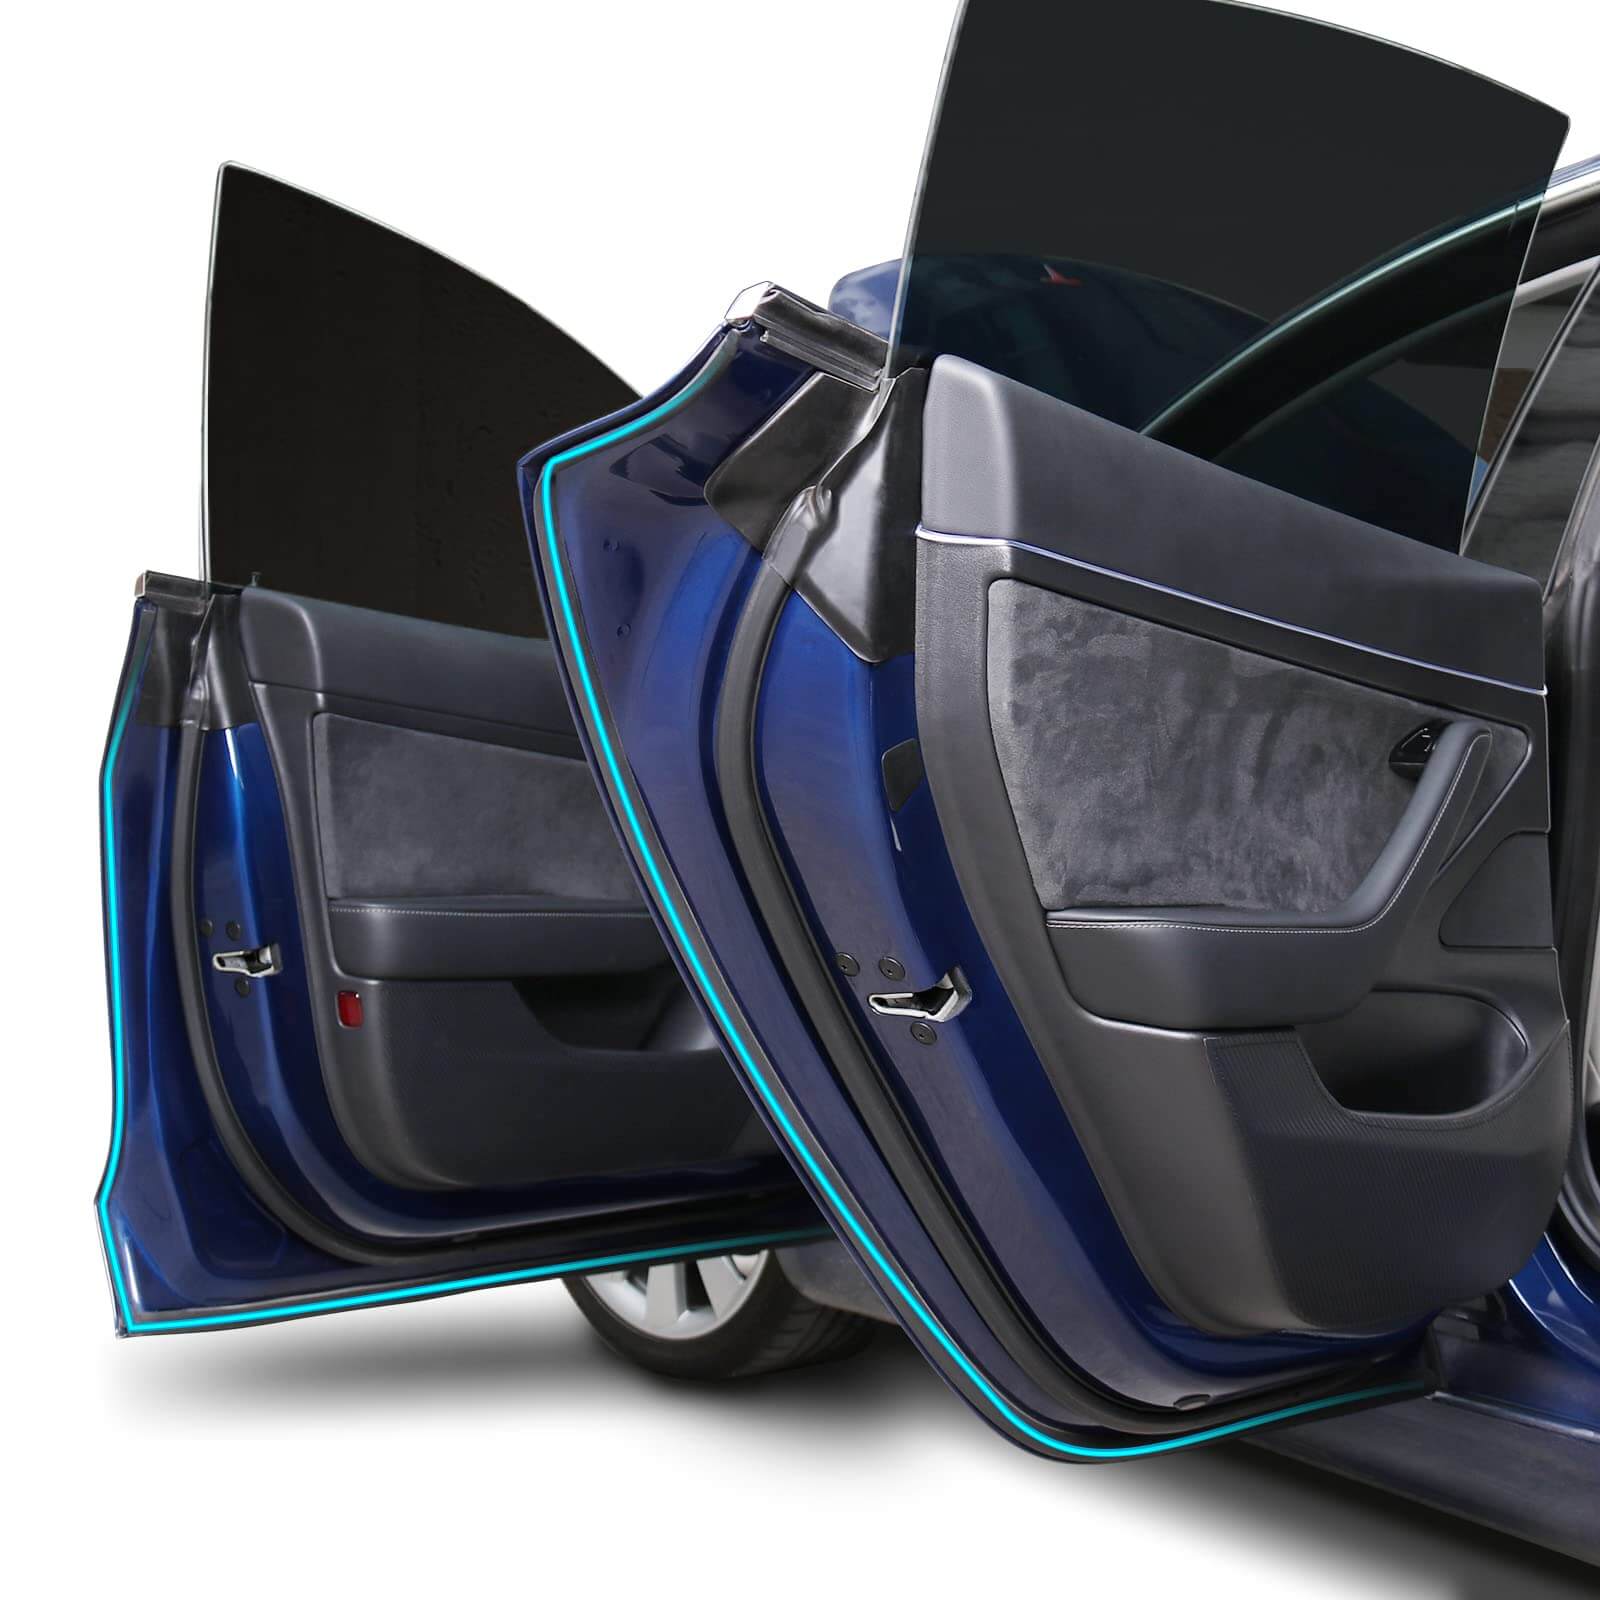 Tesla Model S auto fußbodenbeläge - auto schutzmatte - Prime EVA